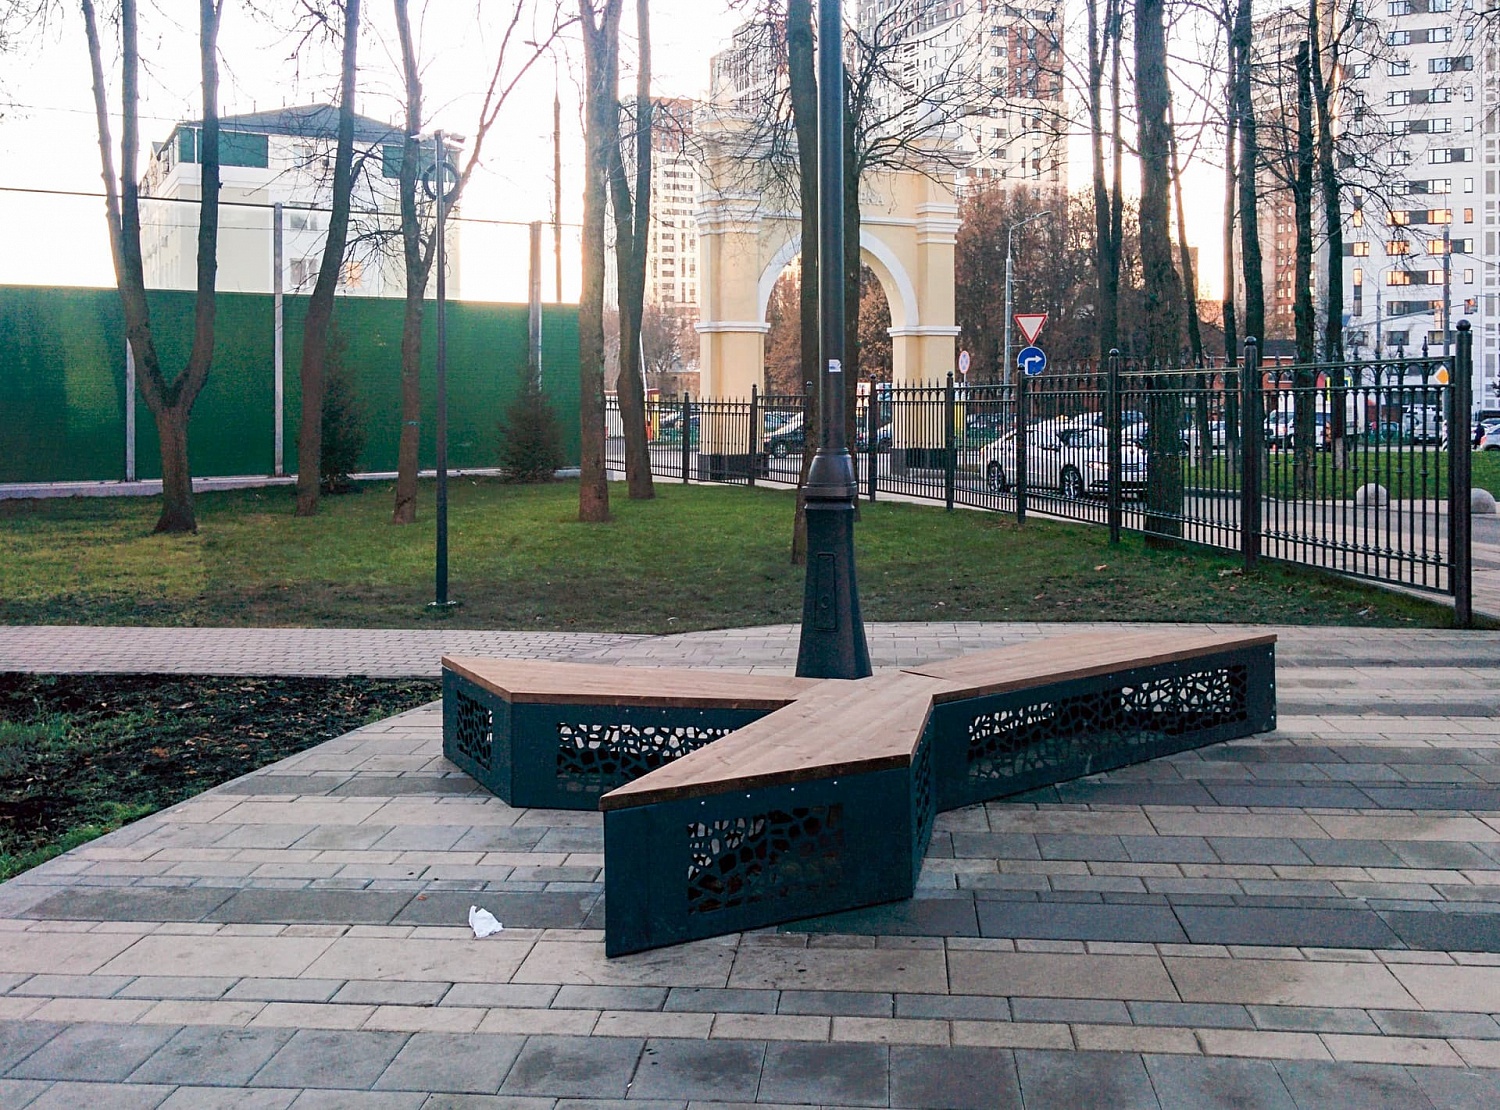 Липовый парк, поселок Коммунарка, Московская область (2017 год)